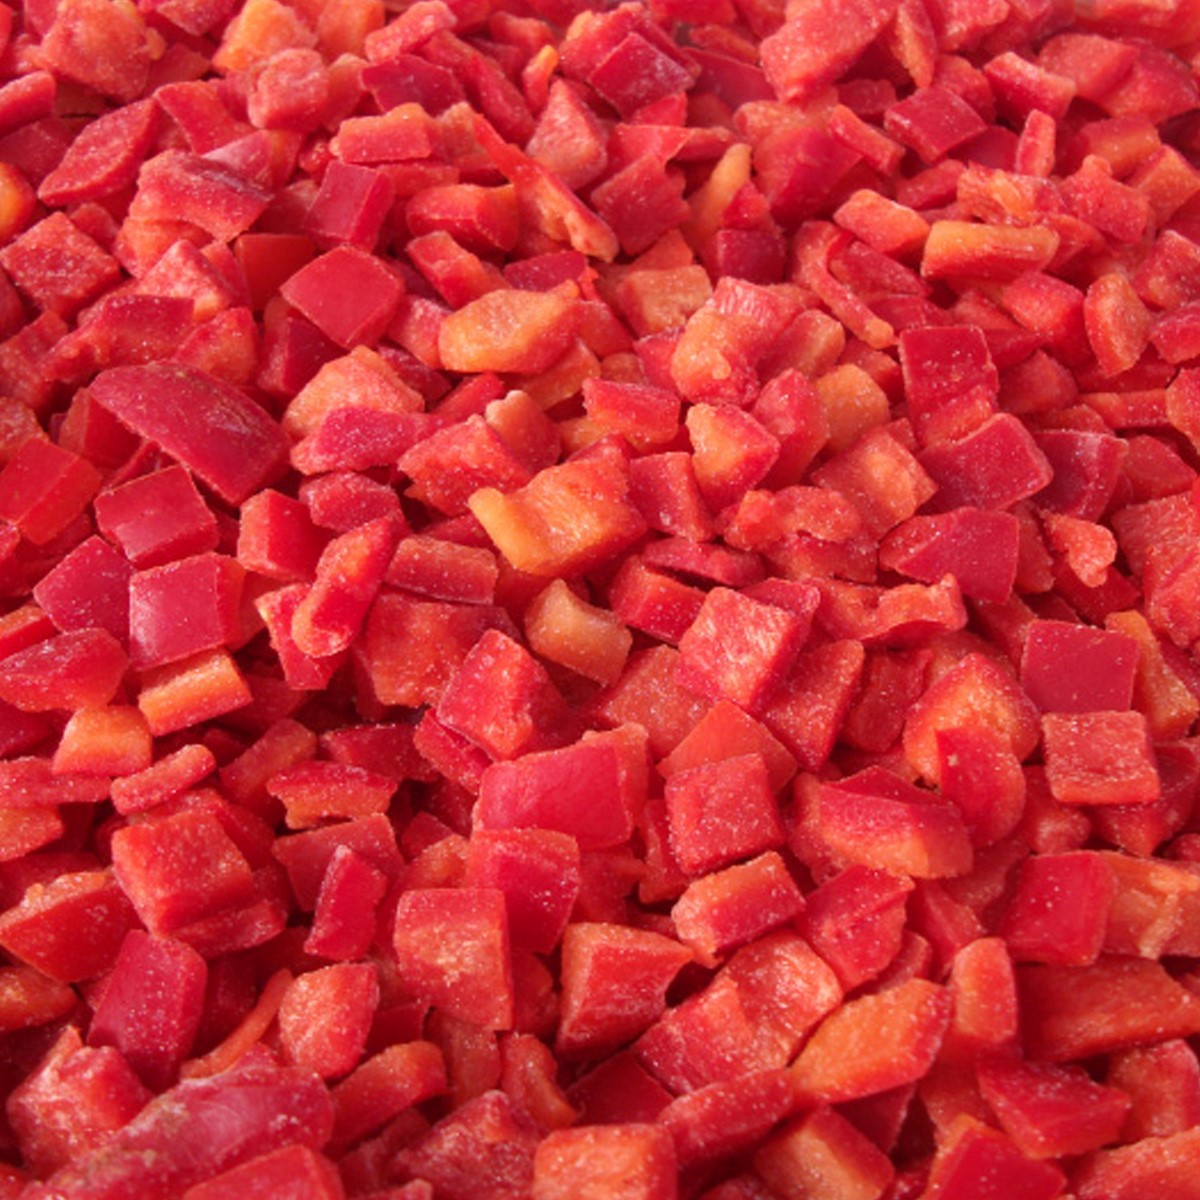 Dondurulmuş küp kırmızı biber 10 kilogramlık ambalajlarda Tartaş marka organik ve kaliteli